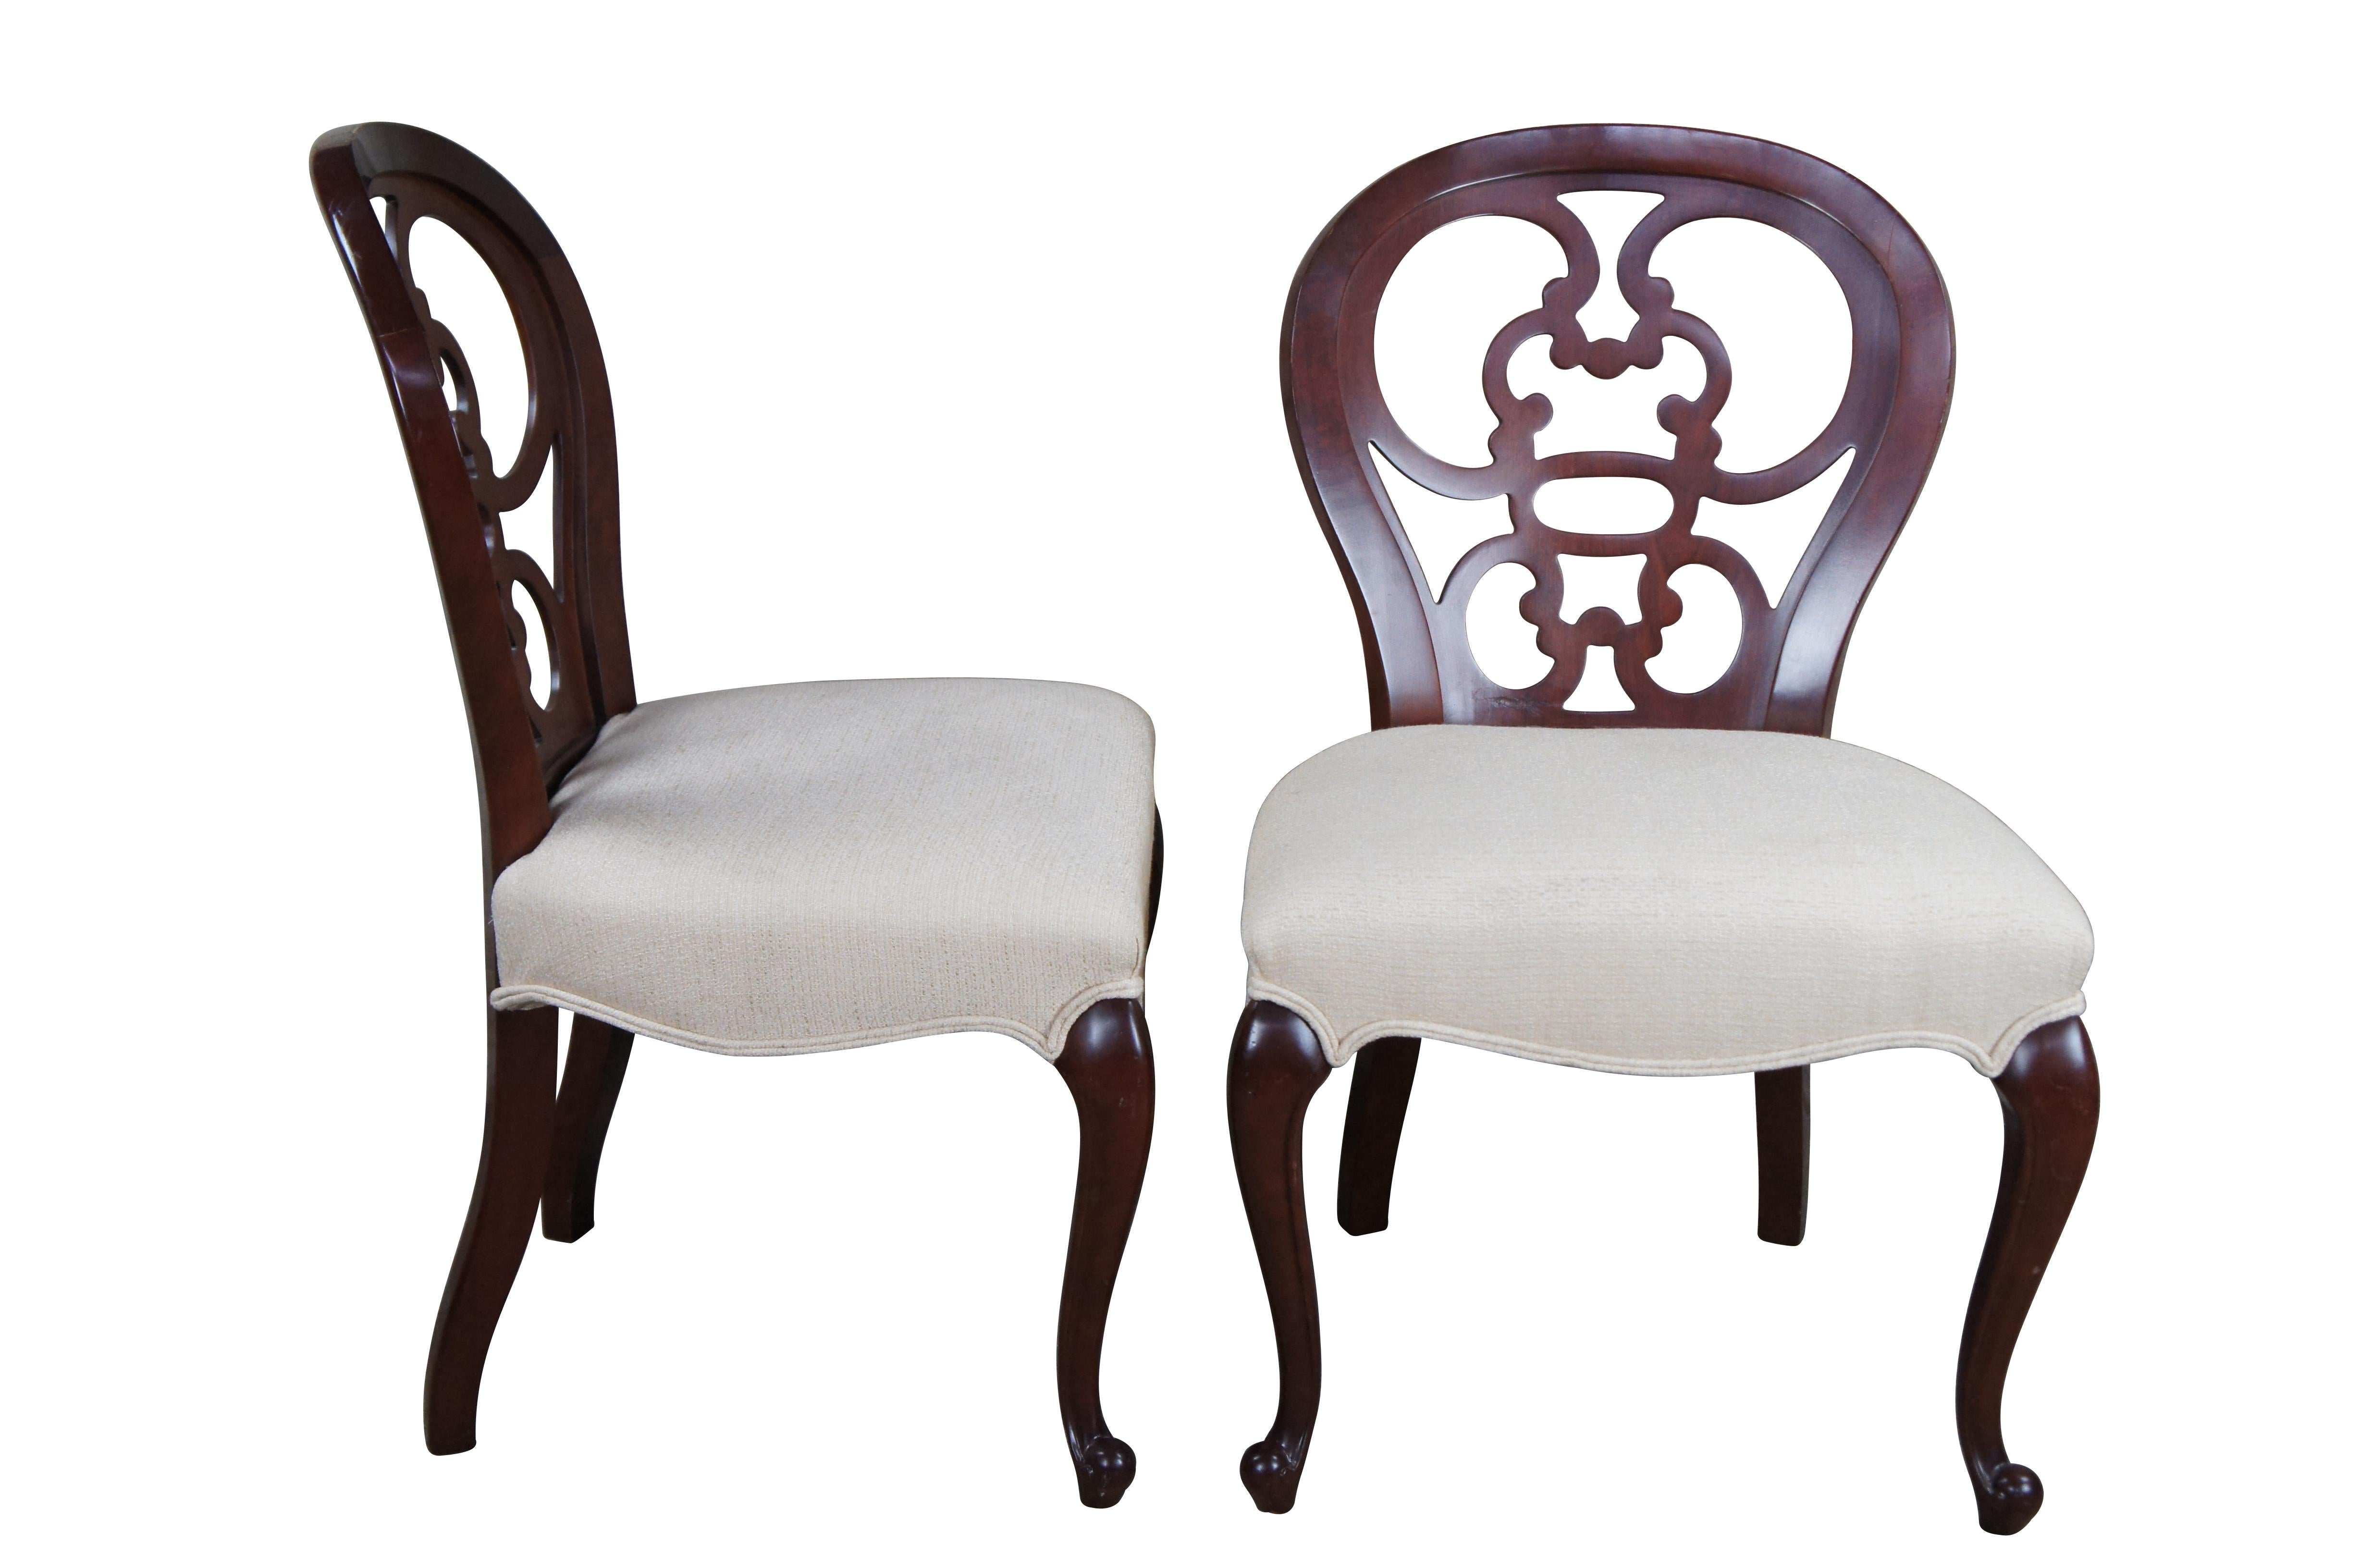 Dorothy Draper a conçu l'original de cette chaise en 1945 pour le Café et les chambres de l'hôtel Greenbrier en Virginie occidentale. Les lignes tourbillonnantes du dosseret, les pieds cabriole d'inspiration française et les lignes courbes des